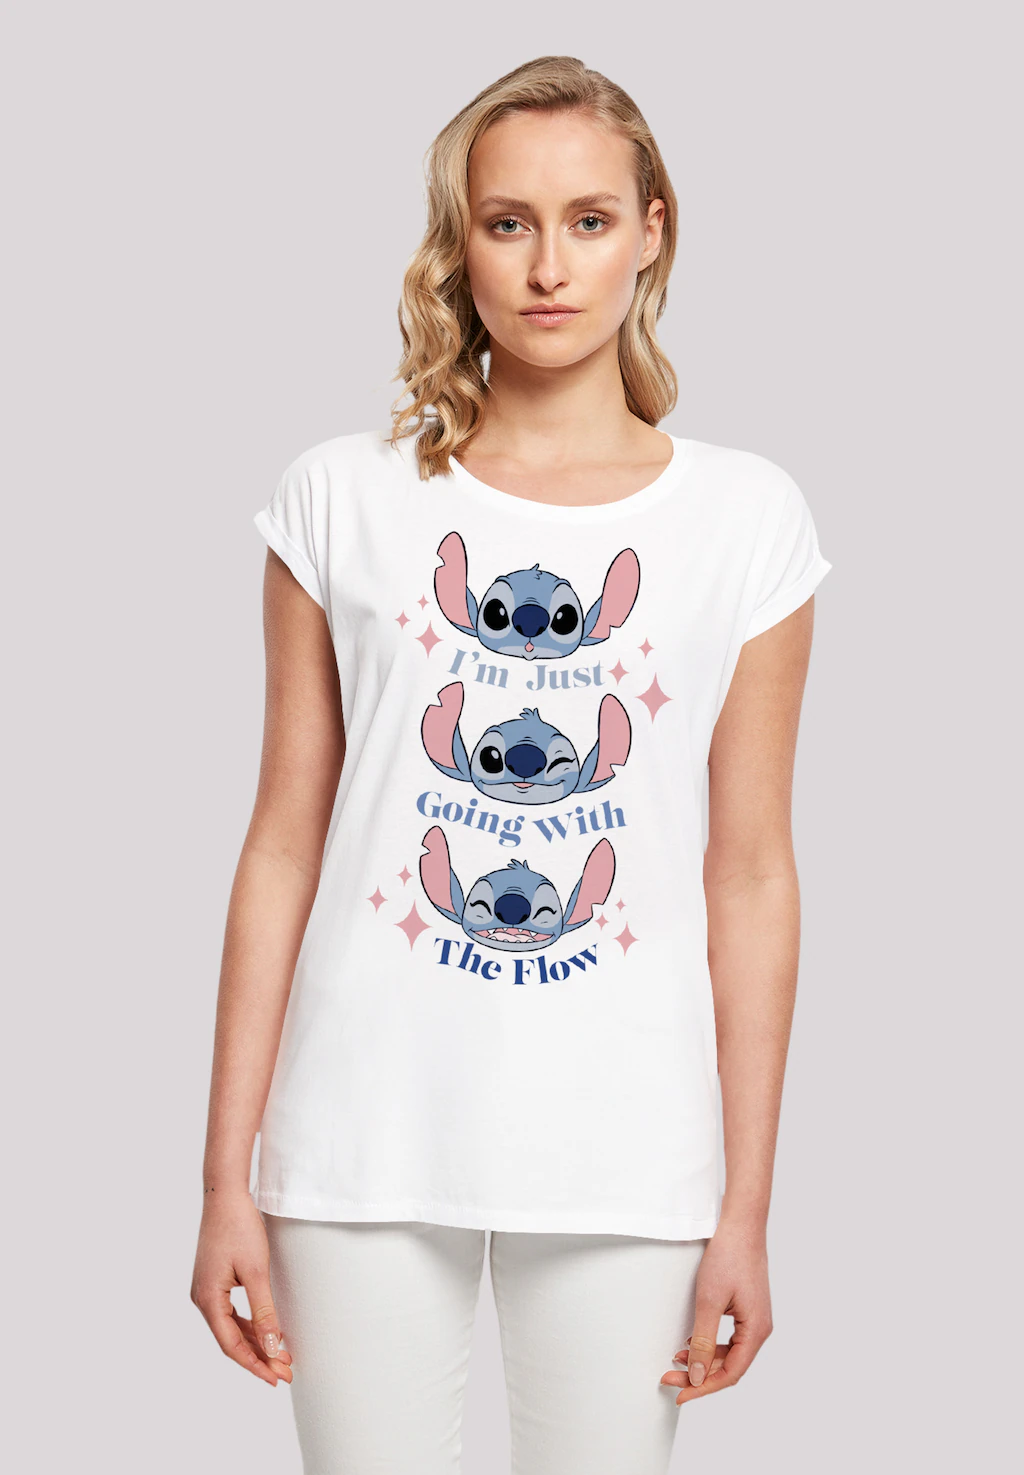 F4NT4STIC T-Shirt "Disney Lilo & Stitch Going With The Flow", Premium Quali günstig online kaufen